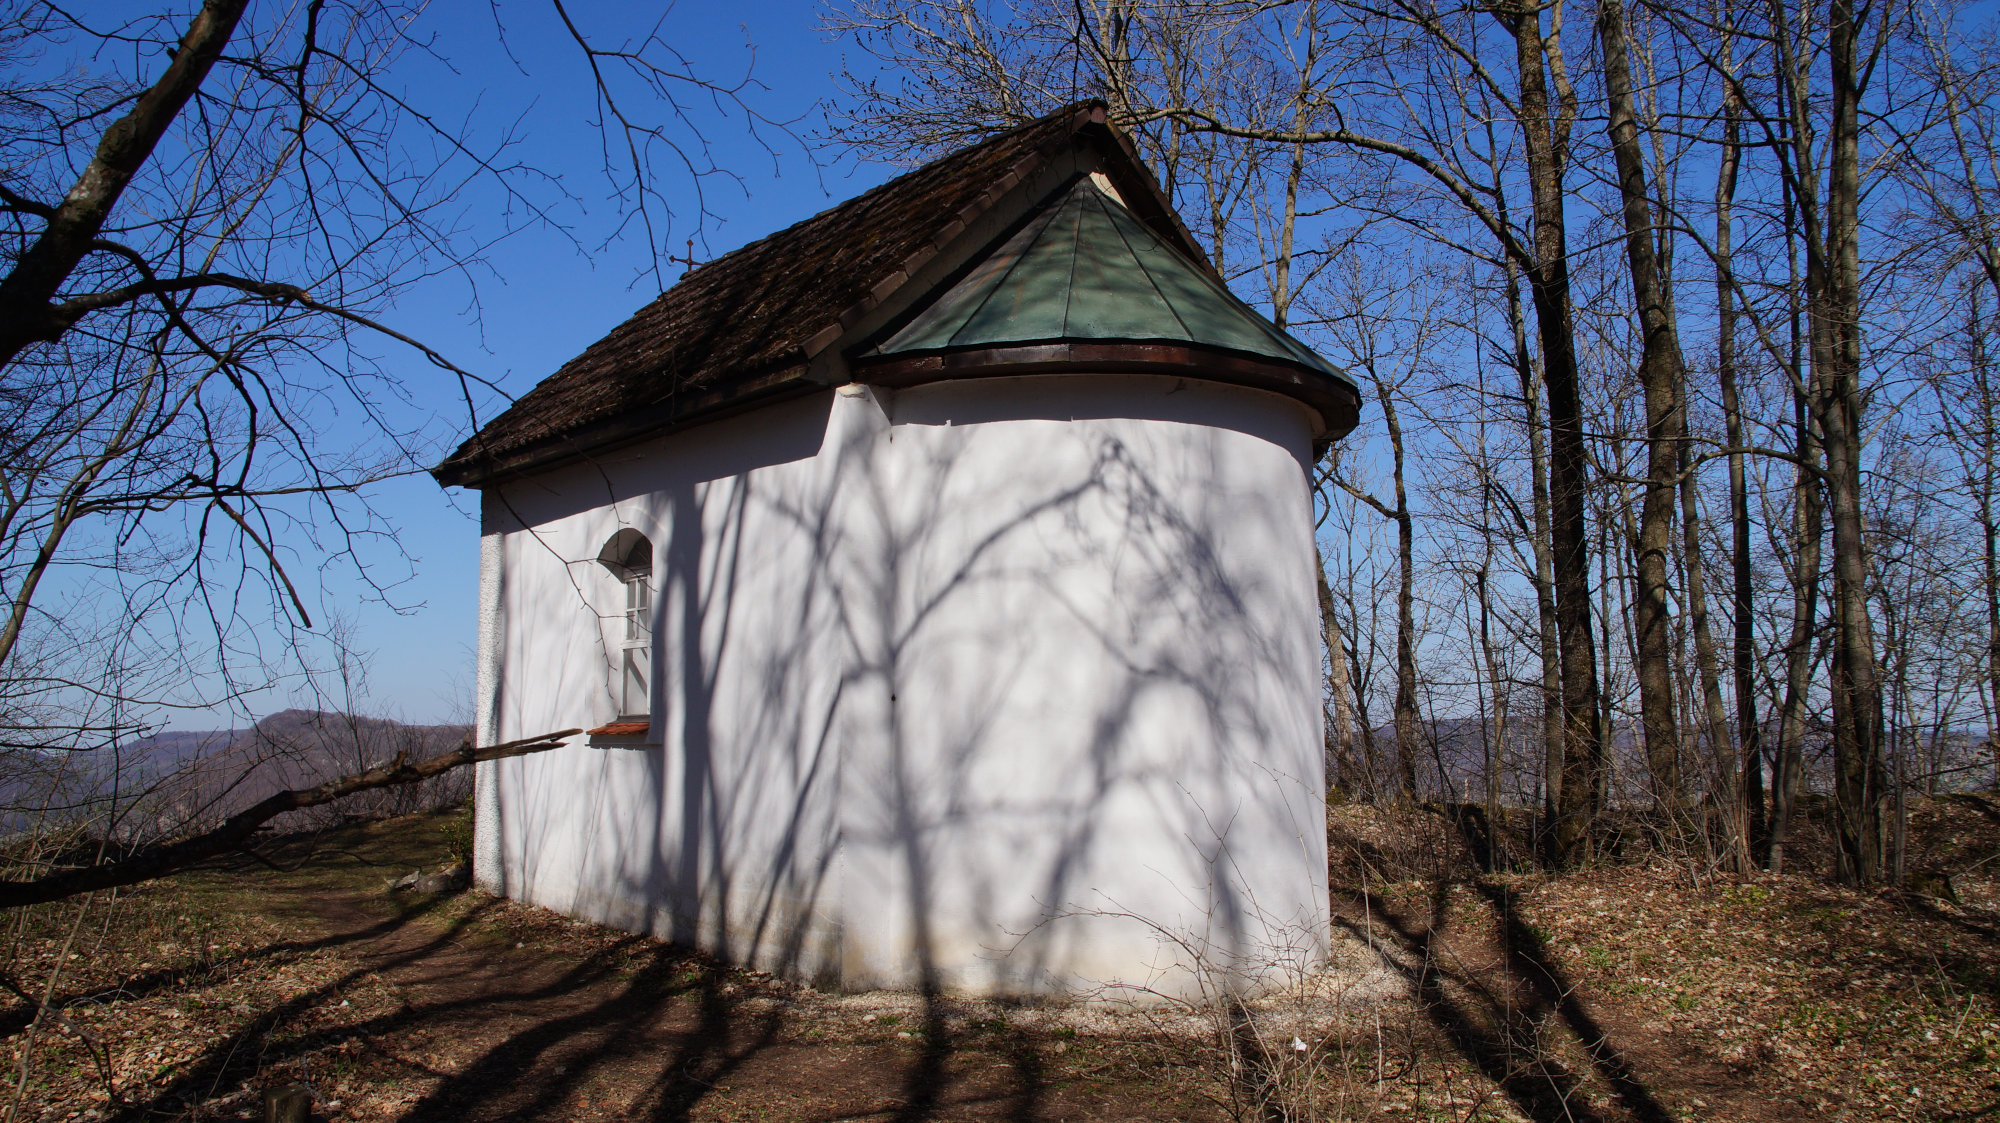 Buschelkapelle